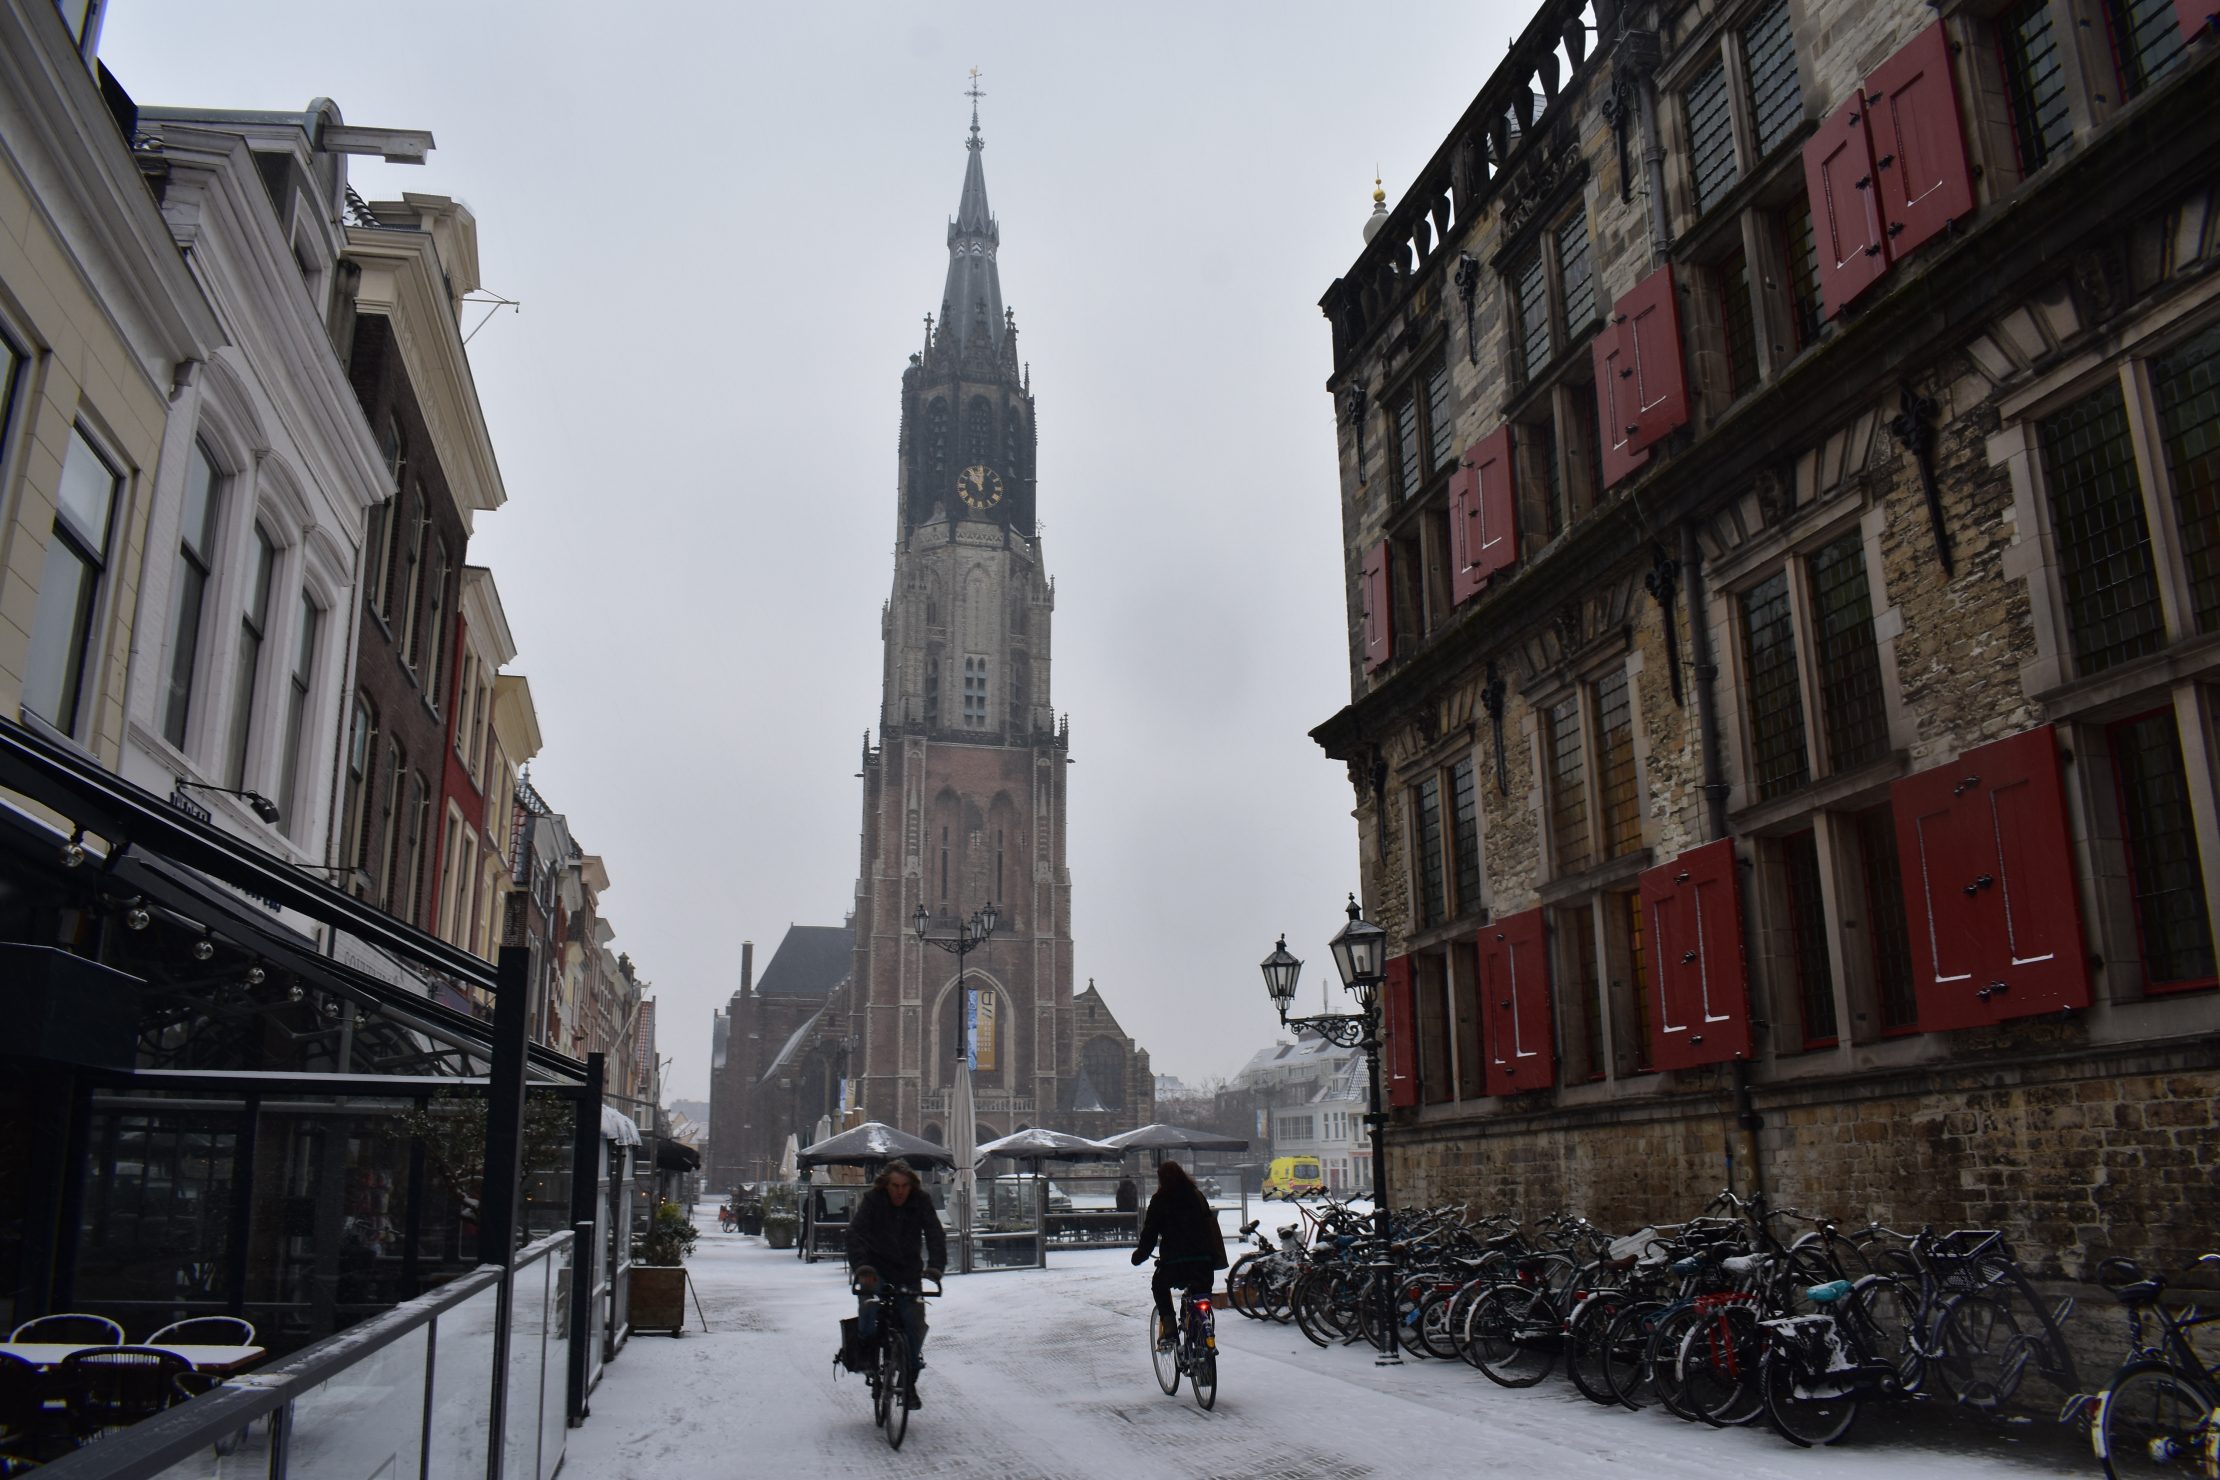 Delft in winter